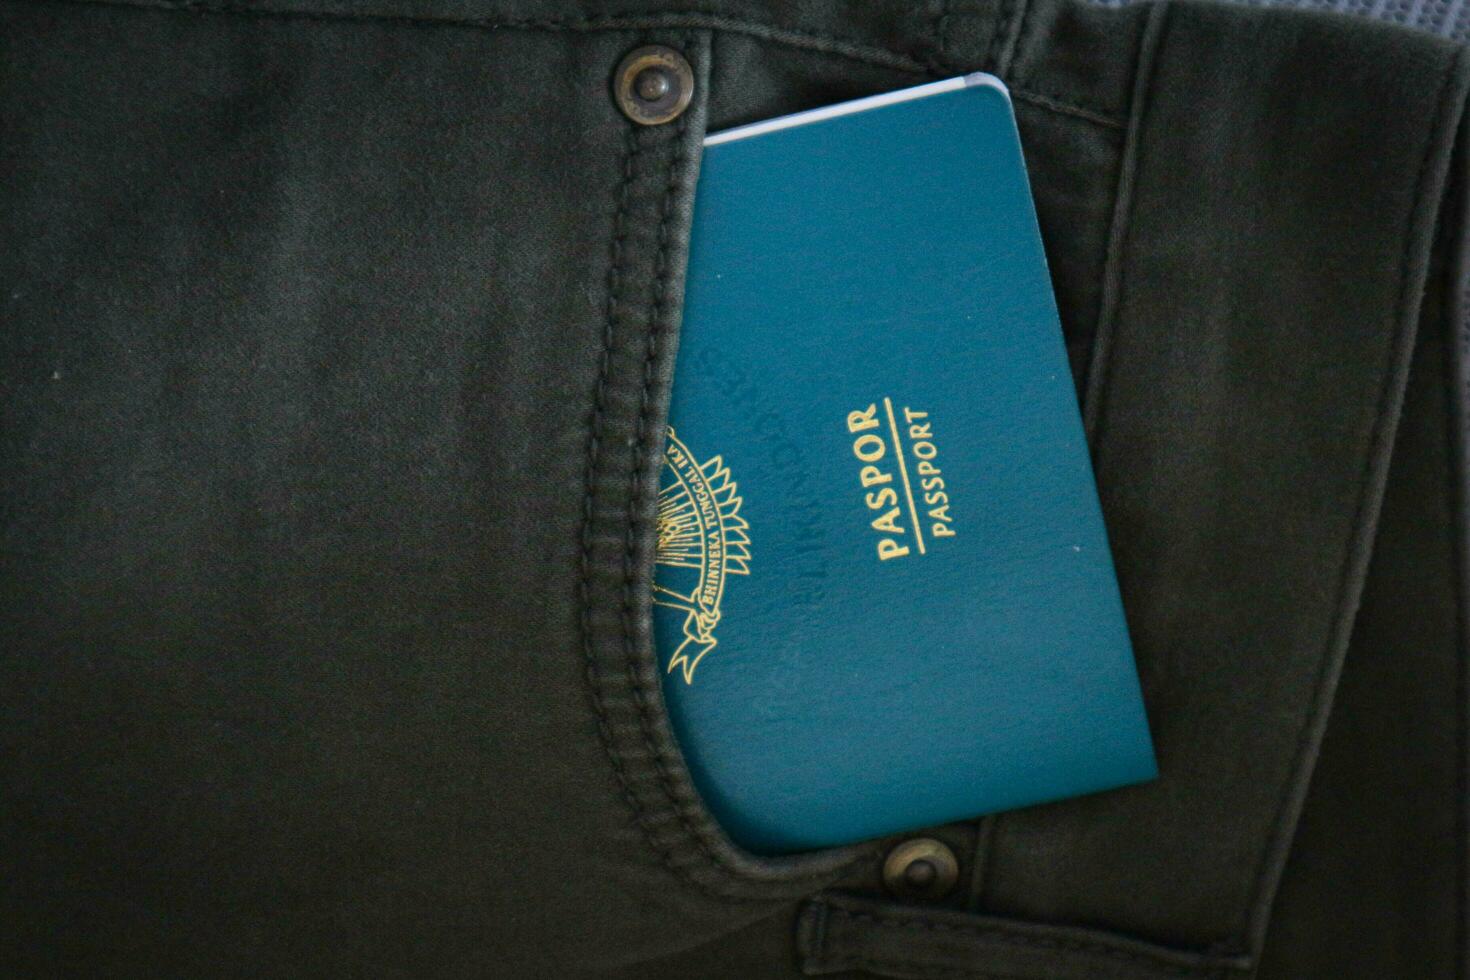 ett indonesiska medborgarskap pass i en grön denim ficka. foto